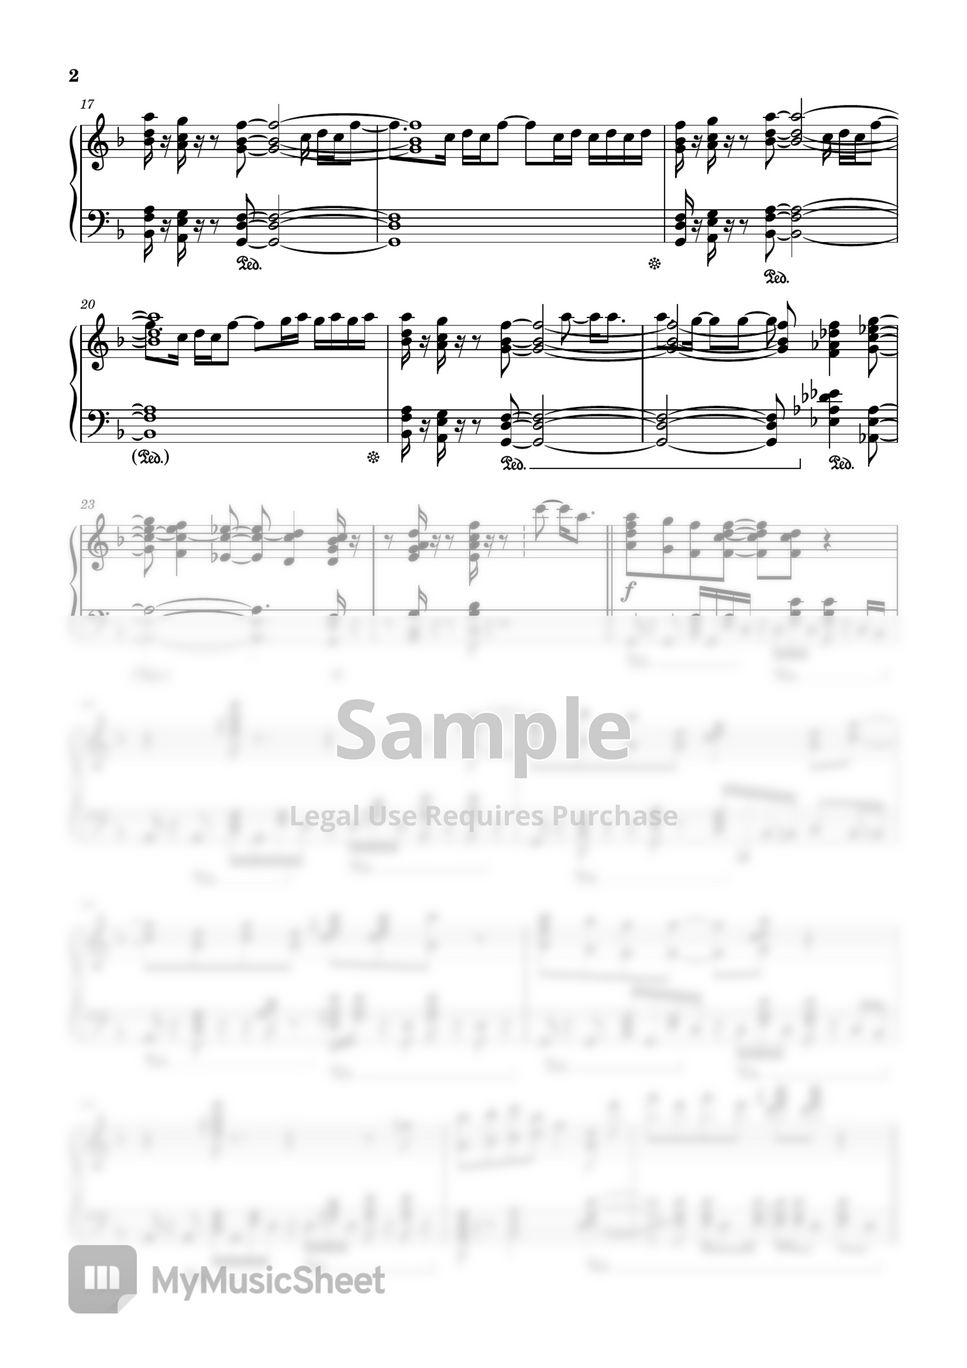 Bruno Mars, Anderson .Paak, Silk Sonic - Skate (Piano solo) by Piano Impression